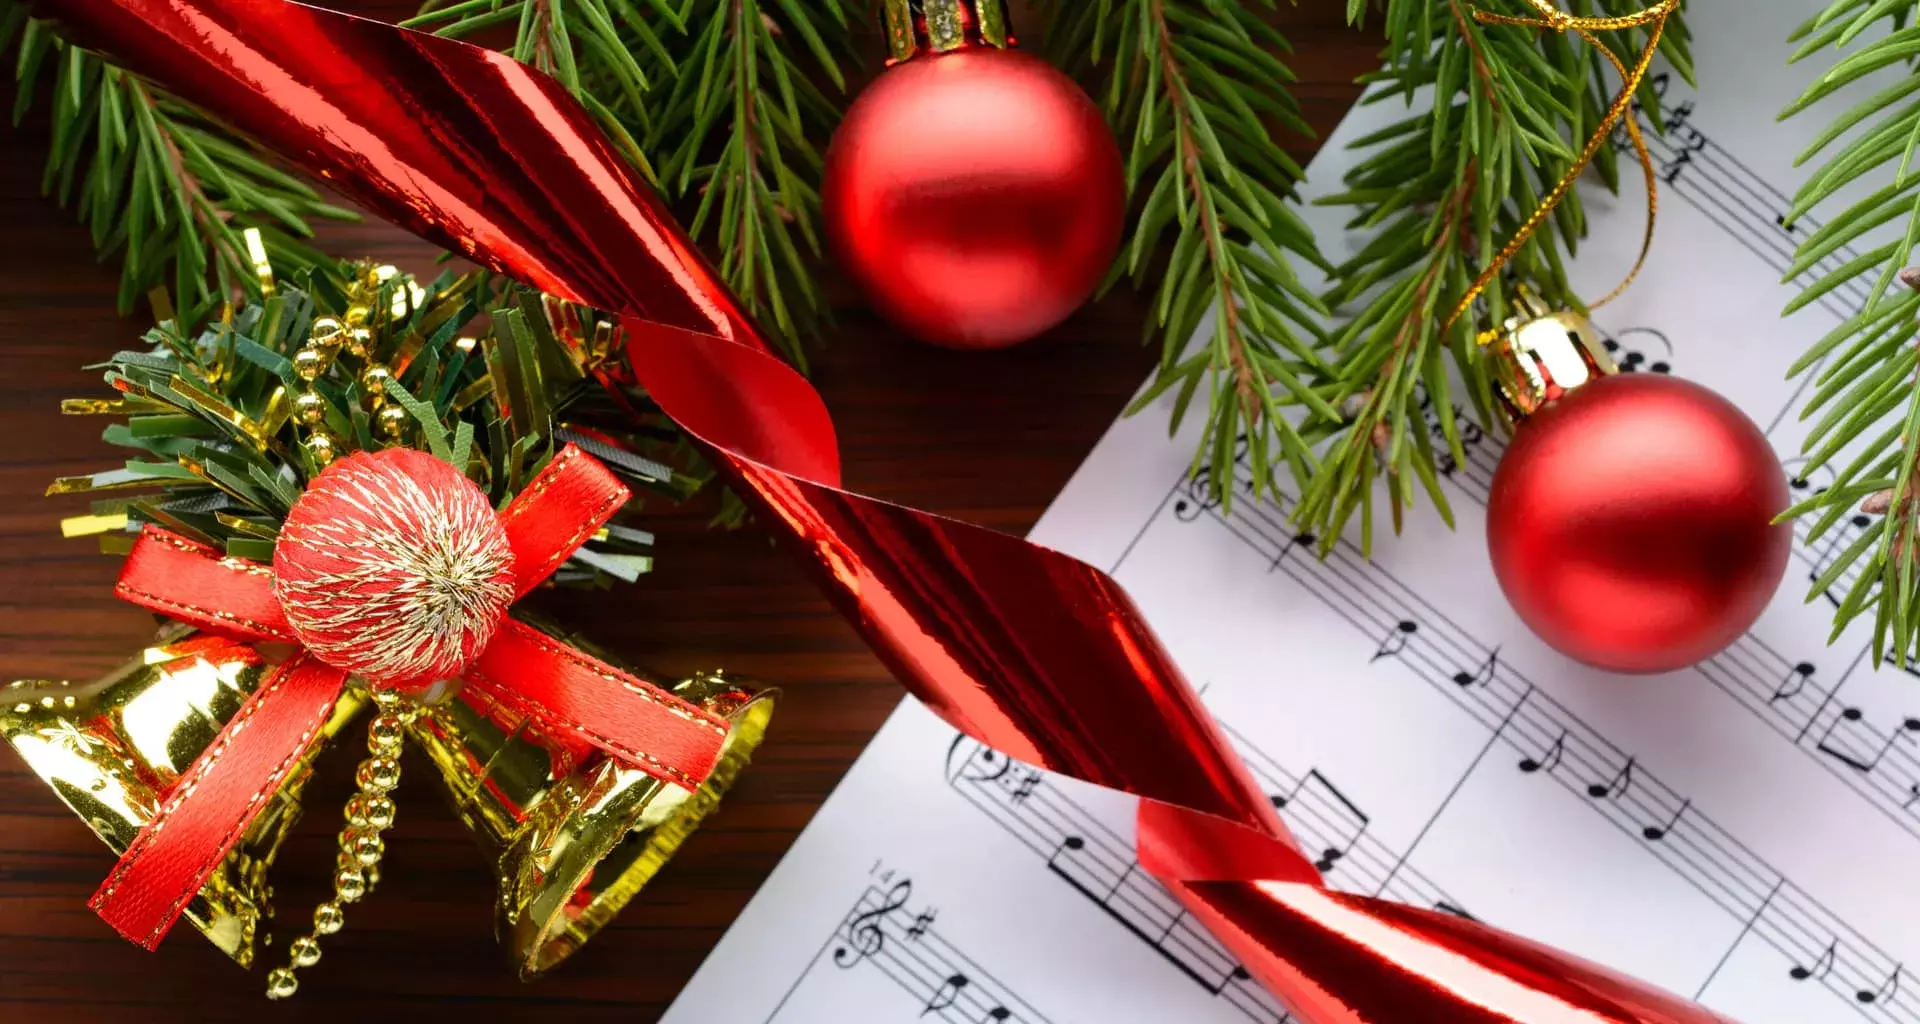 5 canciones navideñas para disfrutar según experta Tec